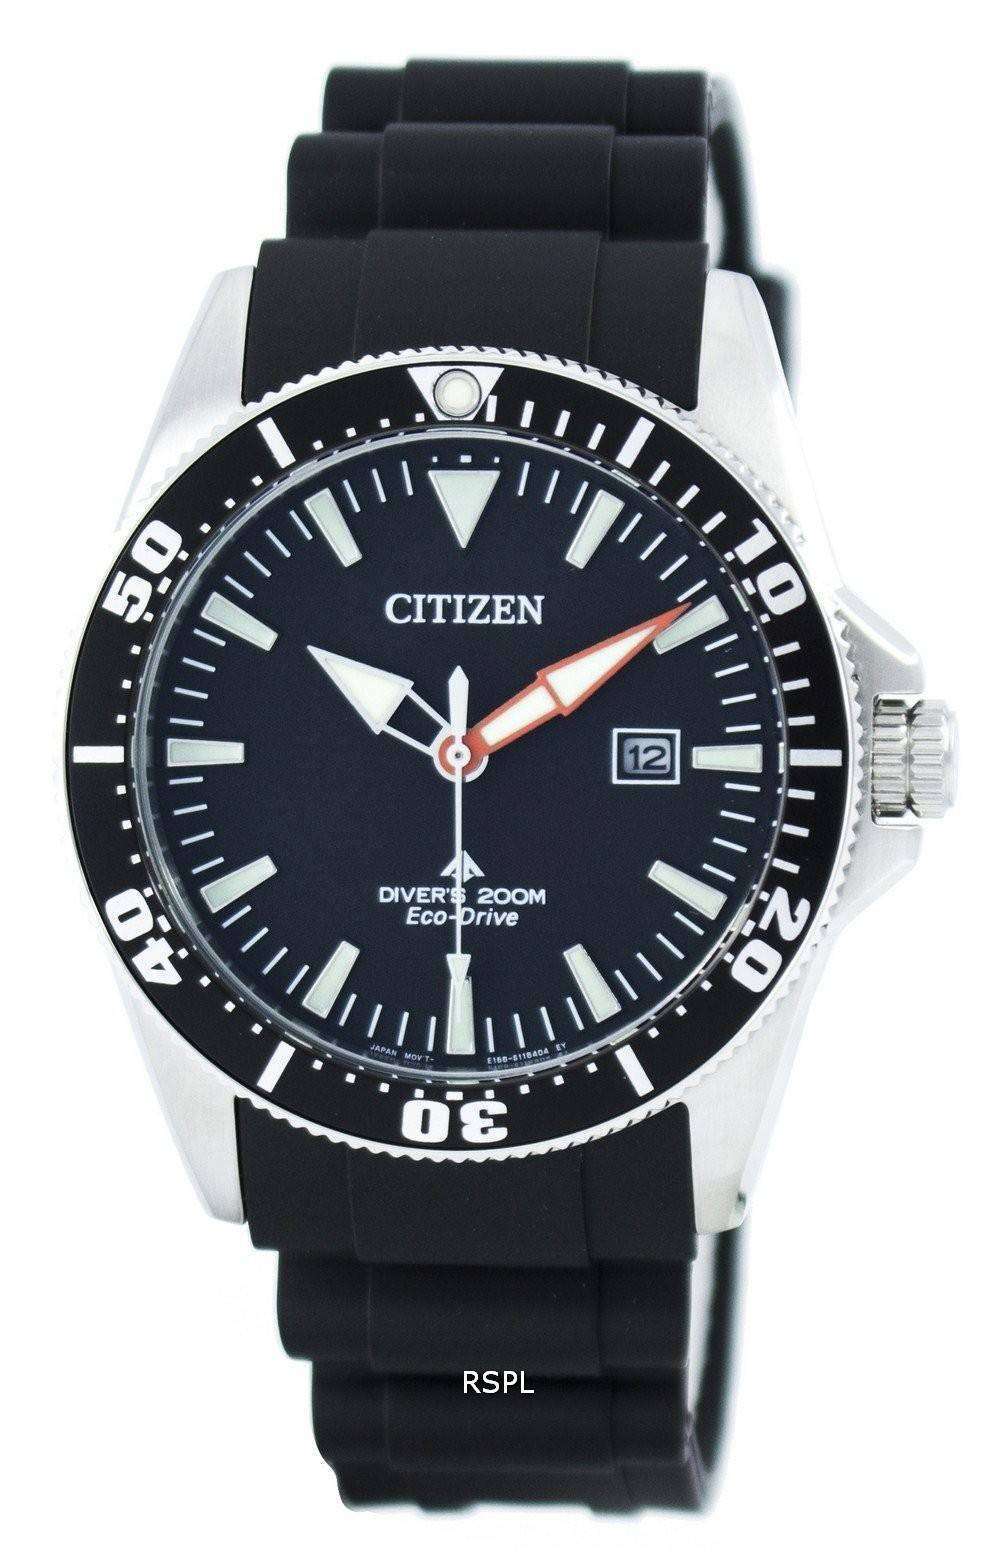 公式腕時計 CITIZEN DIVER’S 200M Eco-Drive ベルト新品 時計